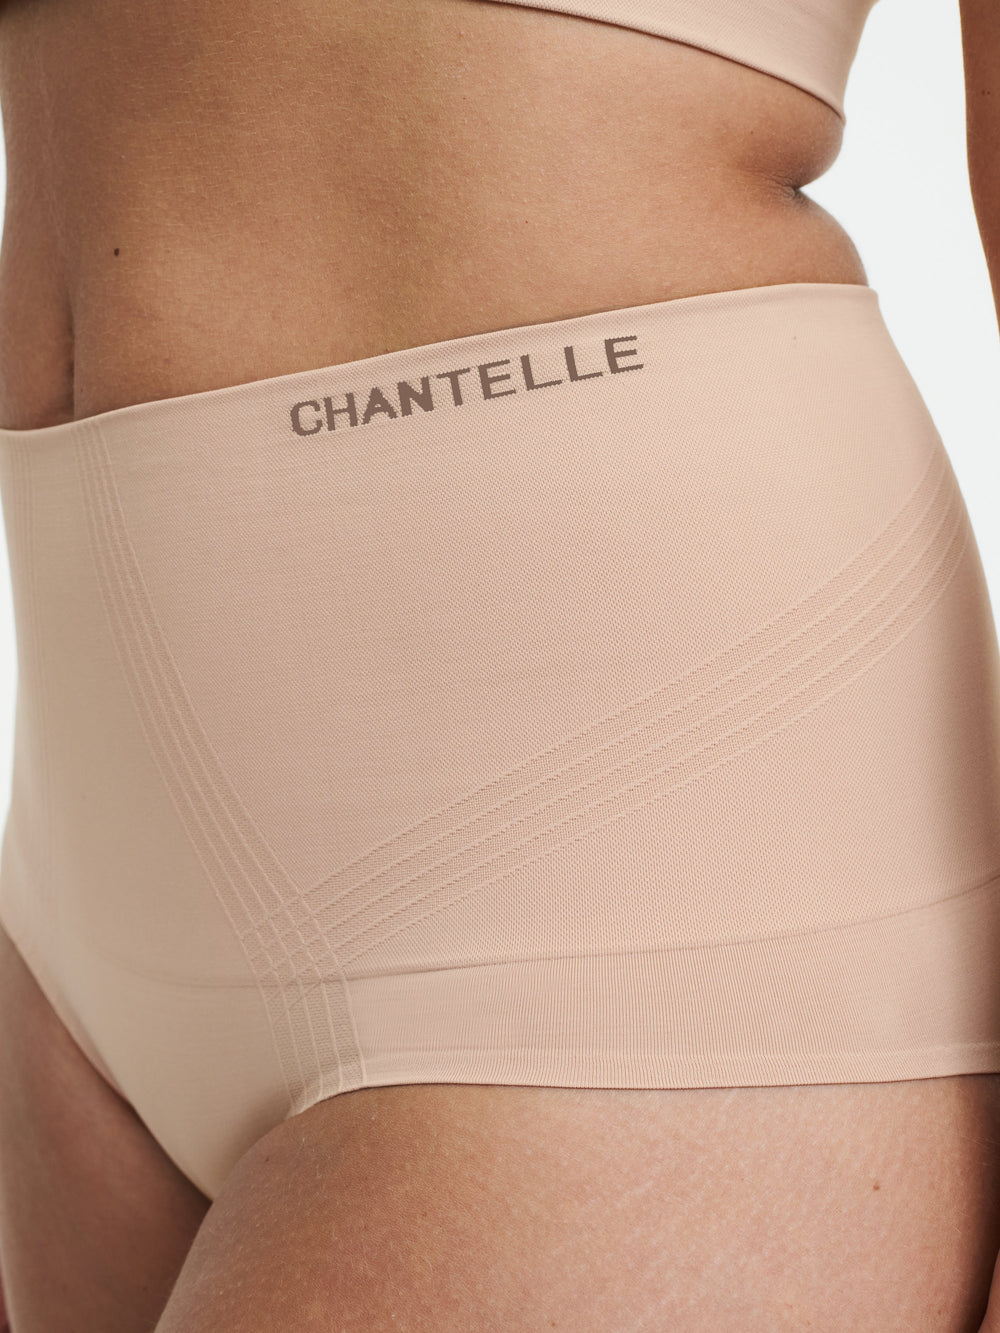 Calzoncillo completo moldeador de cintura alta Chantelle Smooth Comfort - Sirocco Full Brief Chantelle